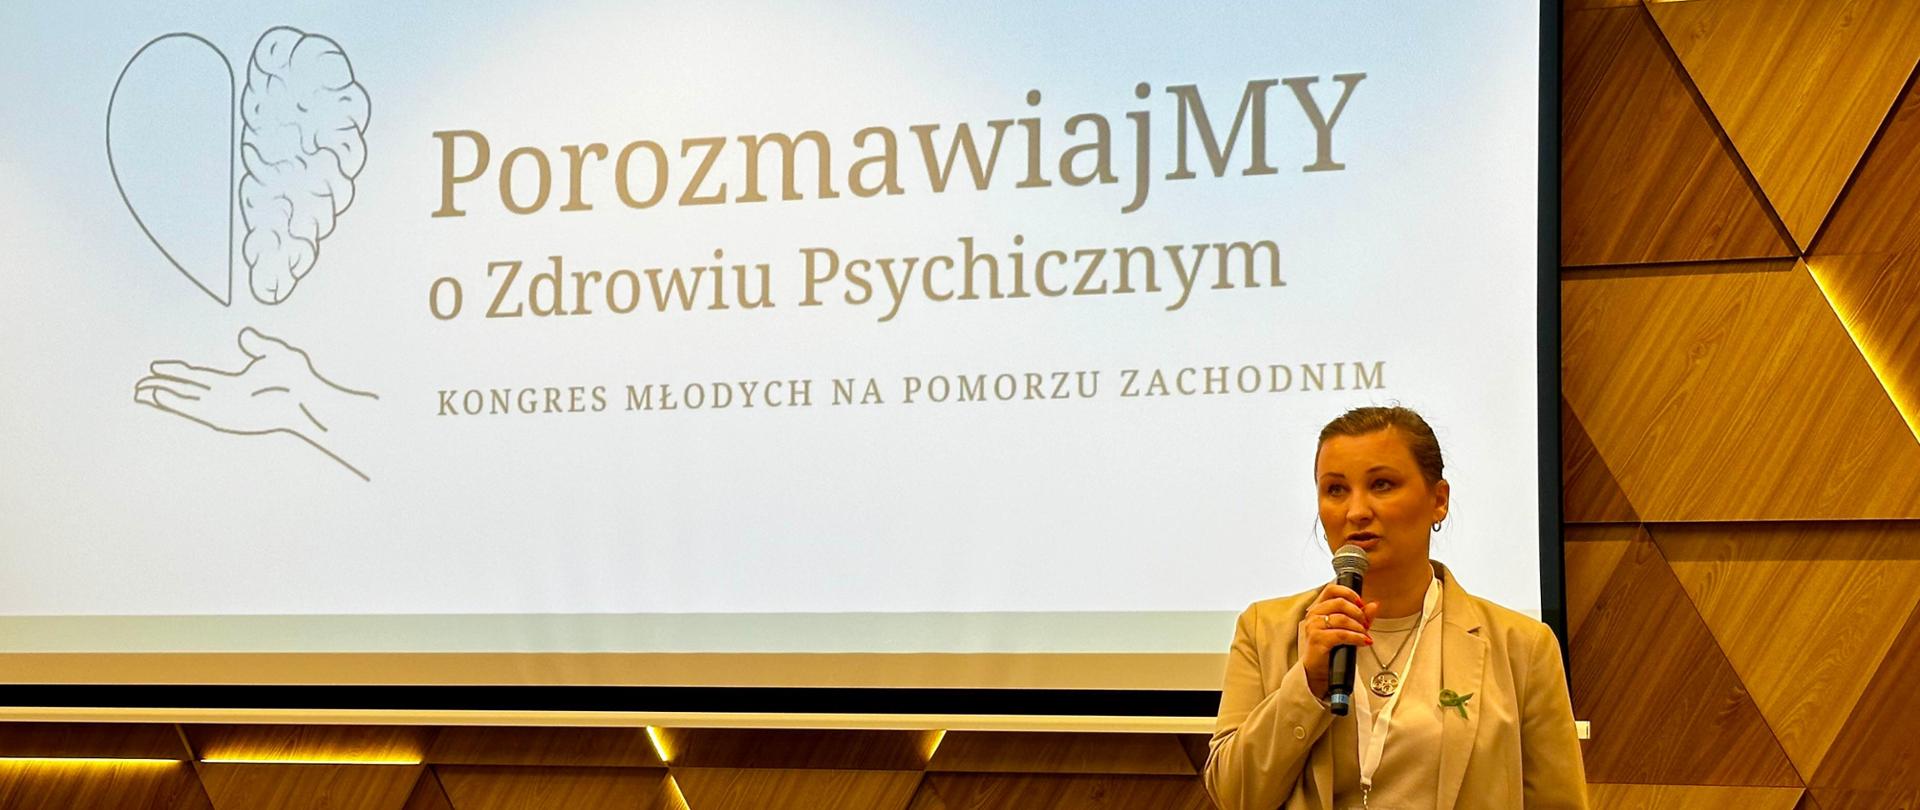 Wiceminister Paulina Piechna-Więckiewicz stoi z mikrofonem w ręku i przemawia. Za jej plecami na drewnianej, podświetlonej ścianie wywieszony jest ekran, na którym wyświetlony jest napis "Porozmawiajmy o Zdrowiu Psychicznym. Kongres Młodych na Pomorzu Zachodnim". 